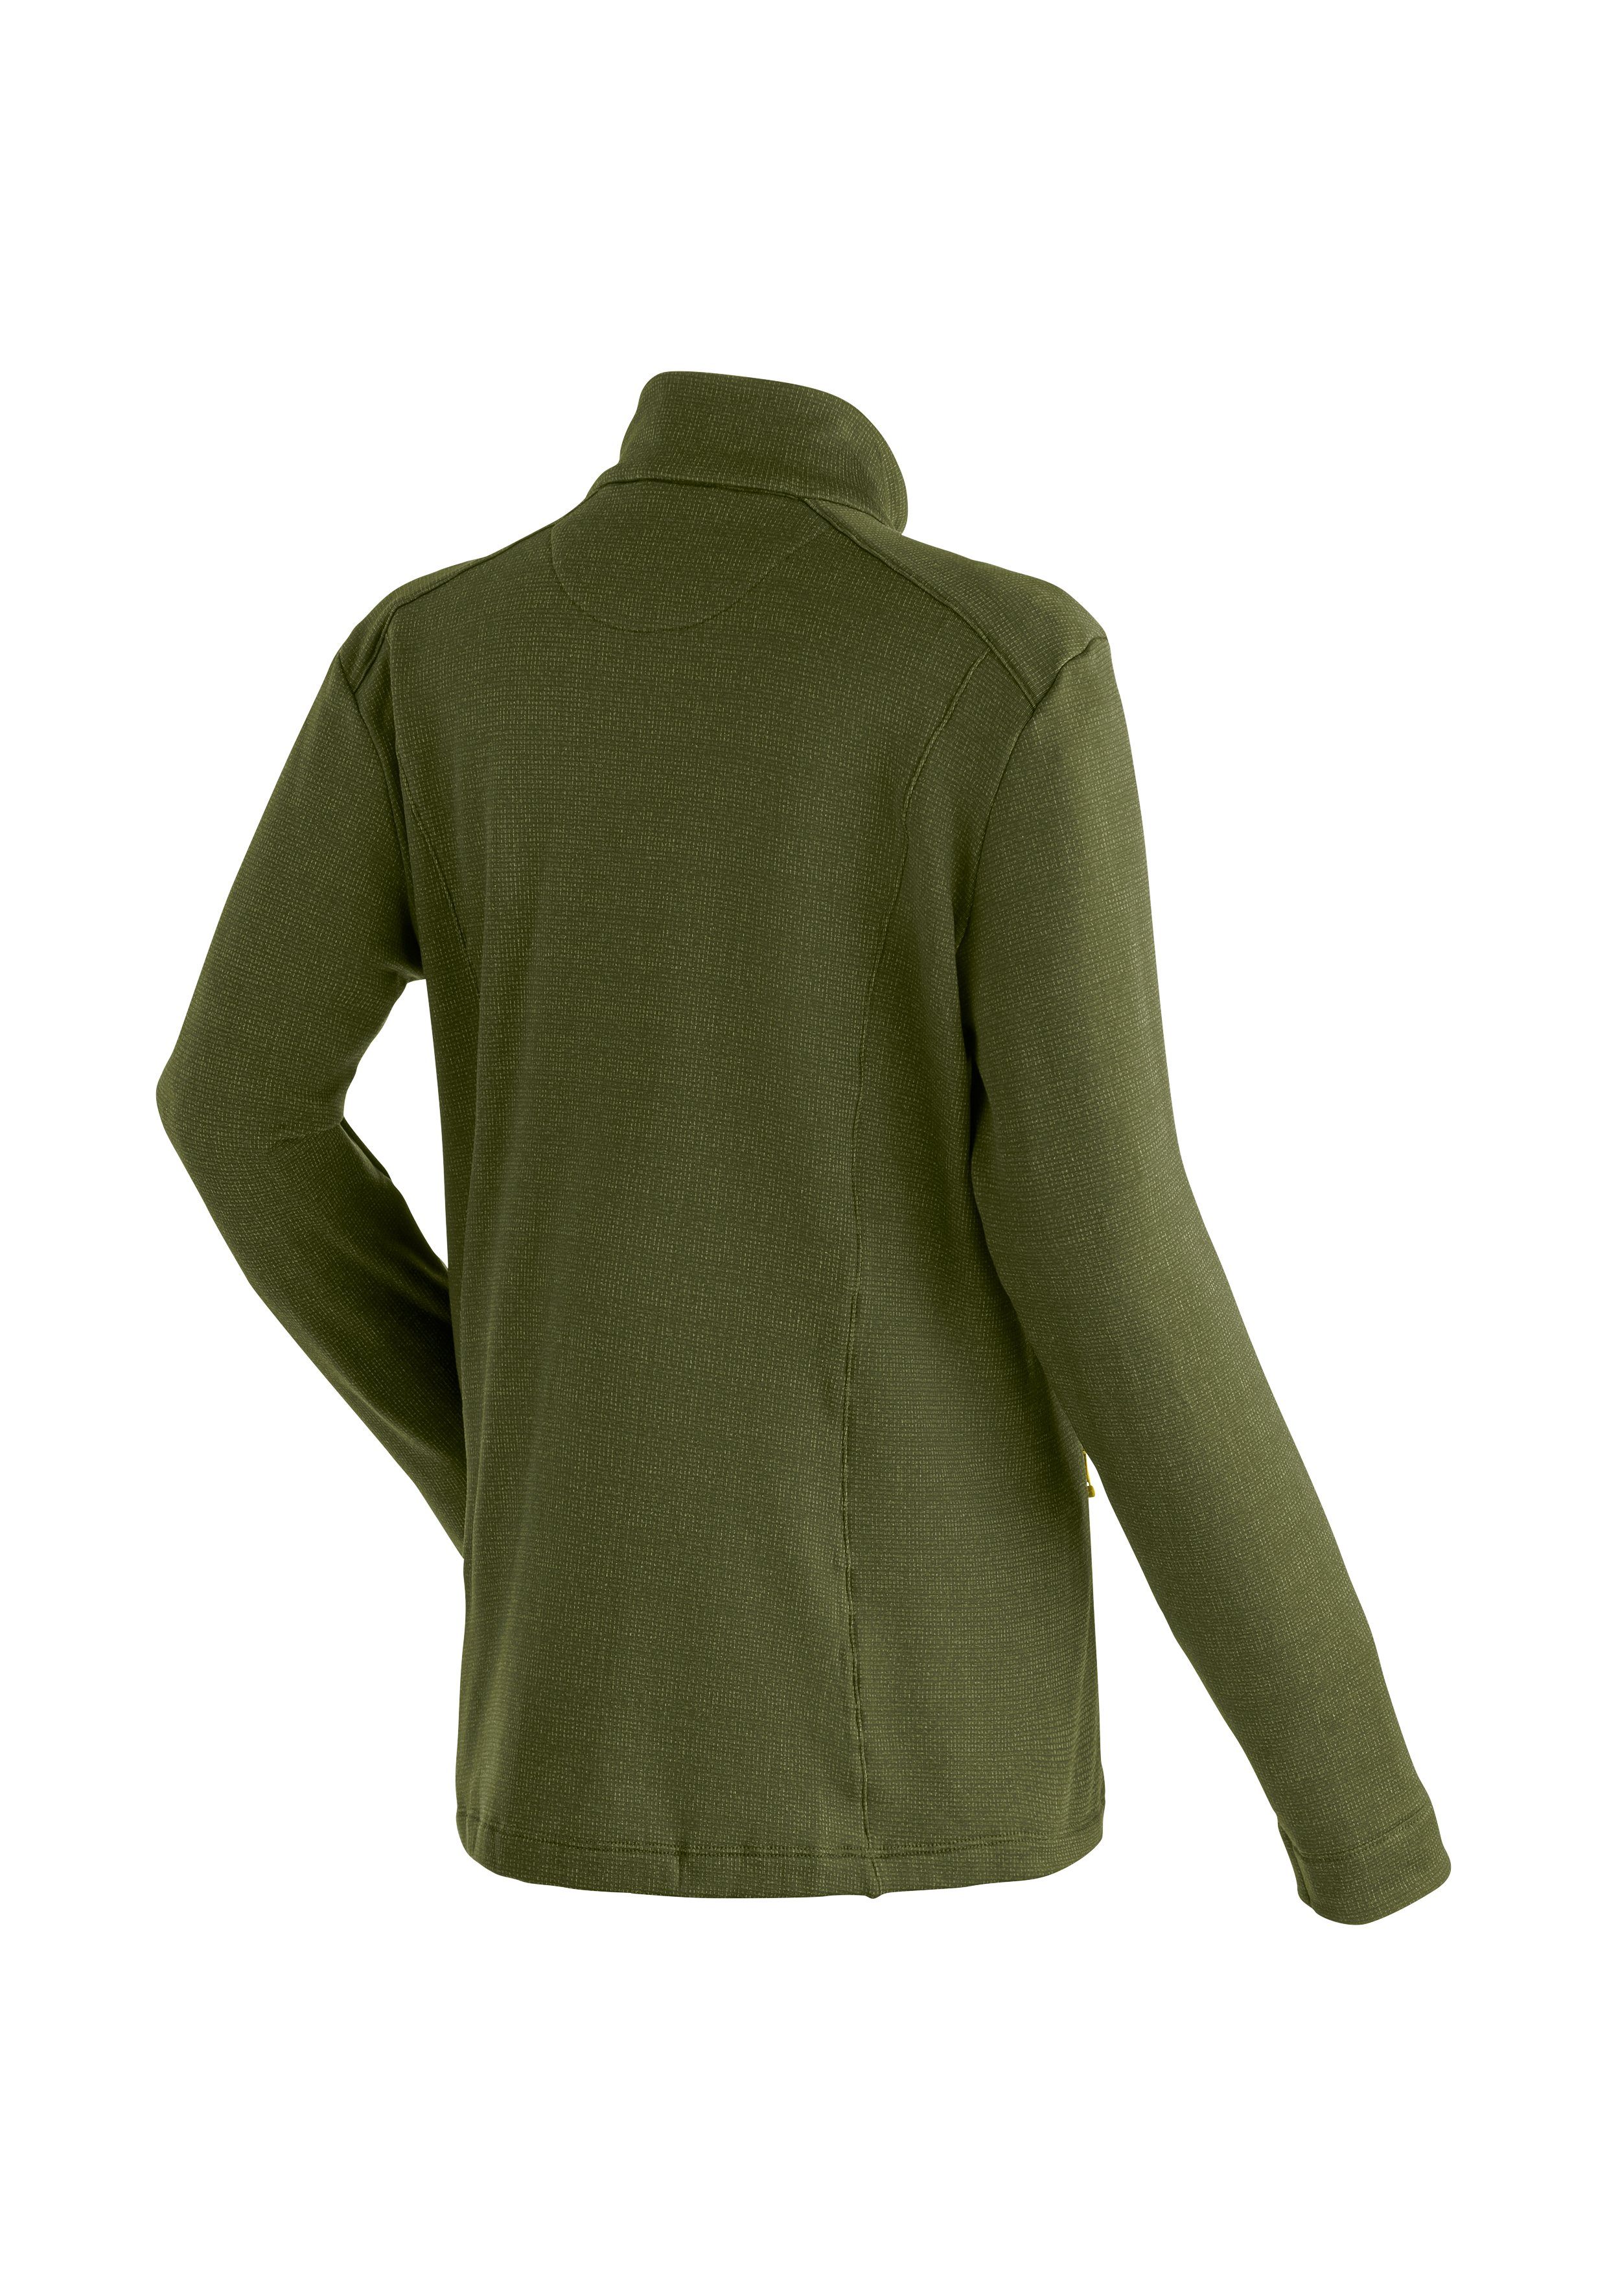 Damen, ideal für Maier Tival Outdoor-Aktivitäten Midlayer-Jacke Funktionsshirt Sports W dunkelgrün für